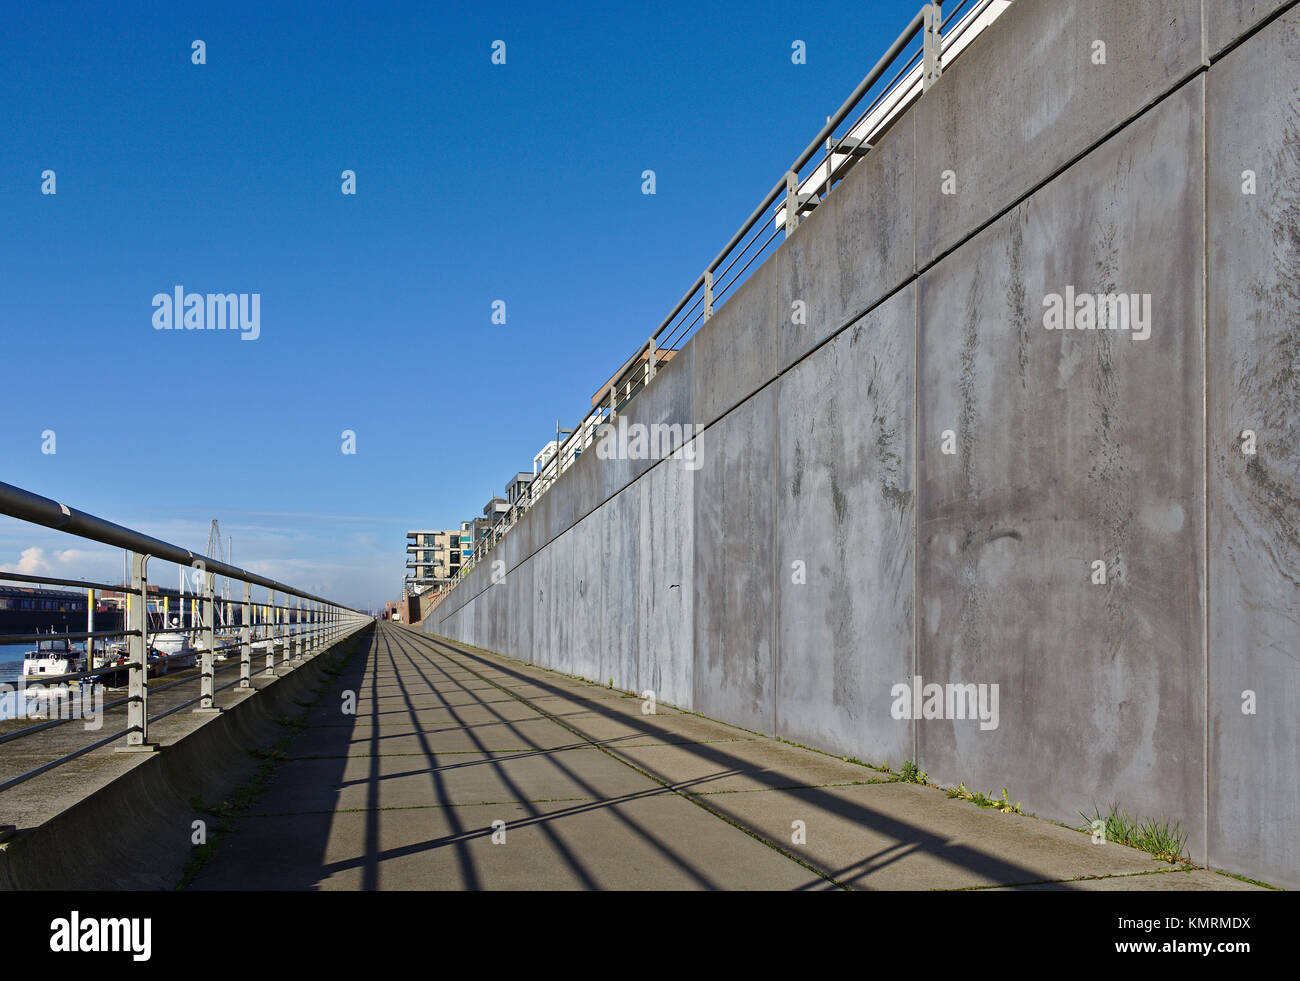 Esplanade lungo l'Europa porto di Brema, Germania con ringhiera in metallo grigio a parete in cemento, ormeggiata yacht a vela ed un cielo blu chiaro Foto Stock